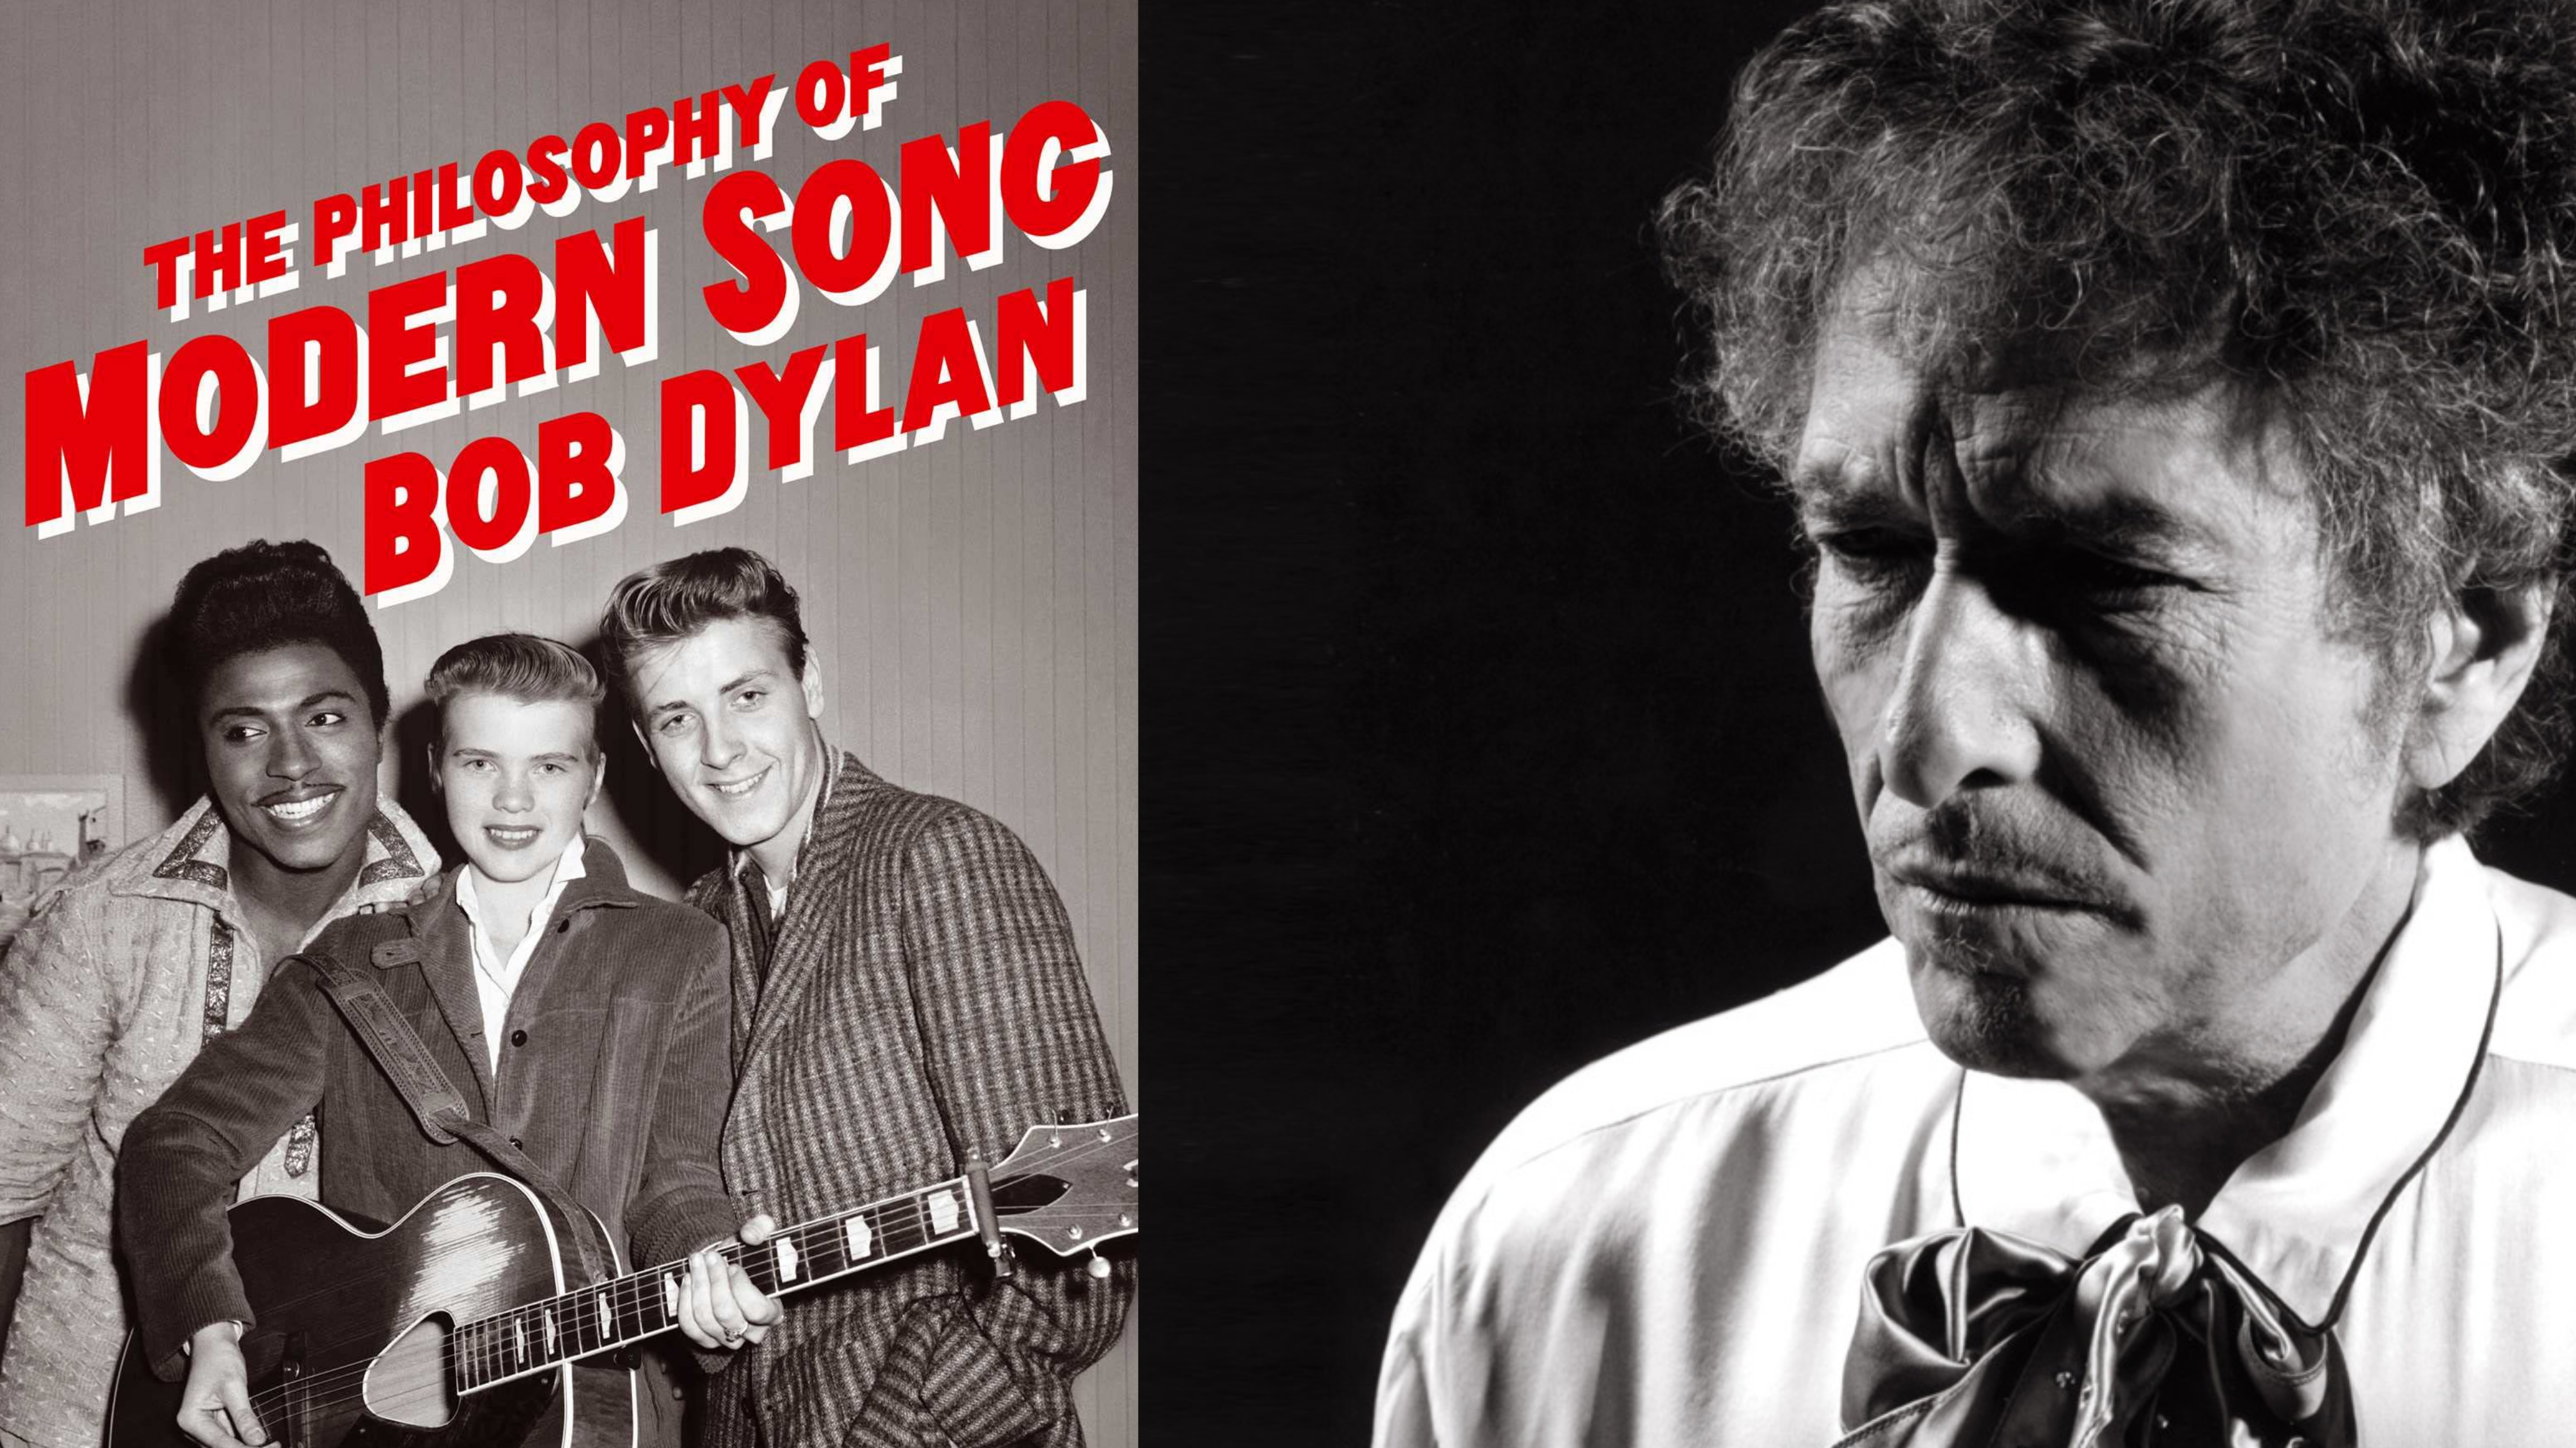 7m·é··r···f····ö·····l······d – Bob Dylan mániái